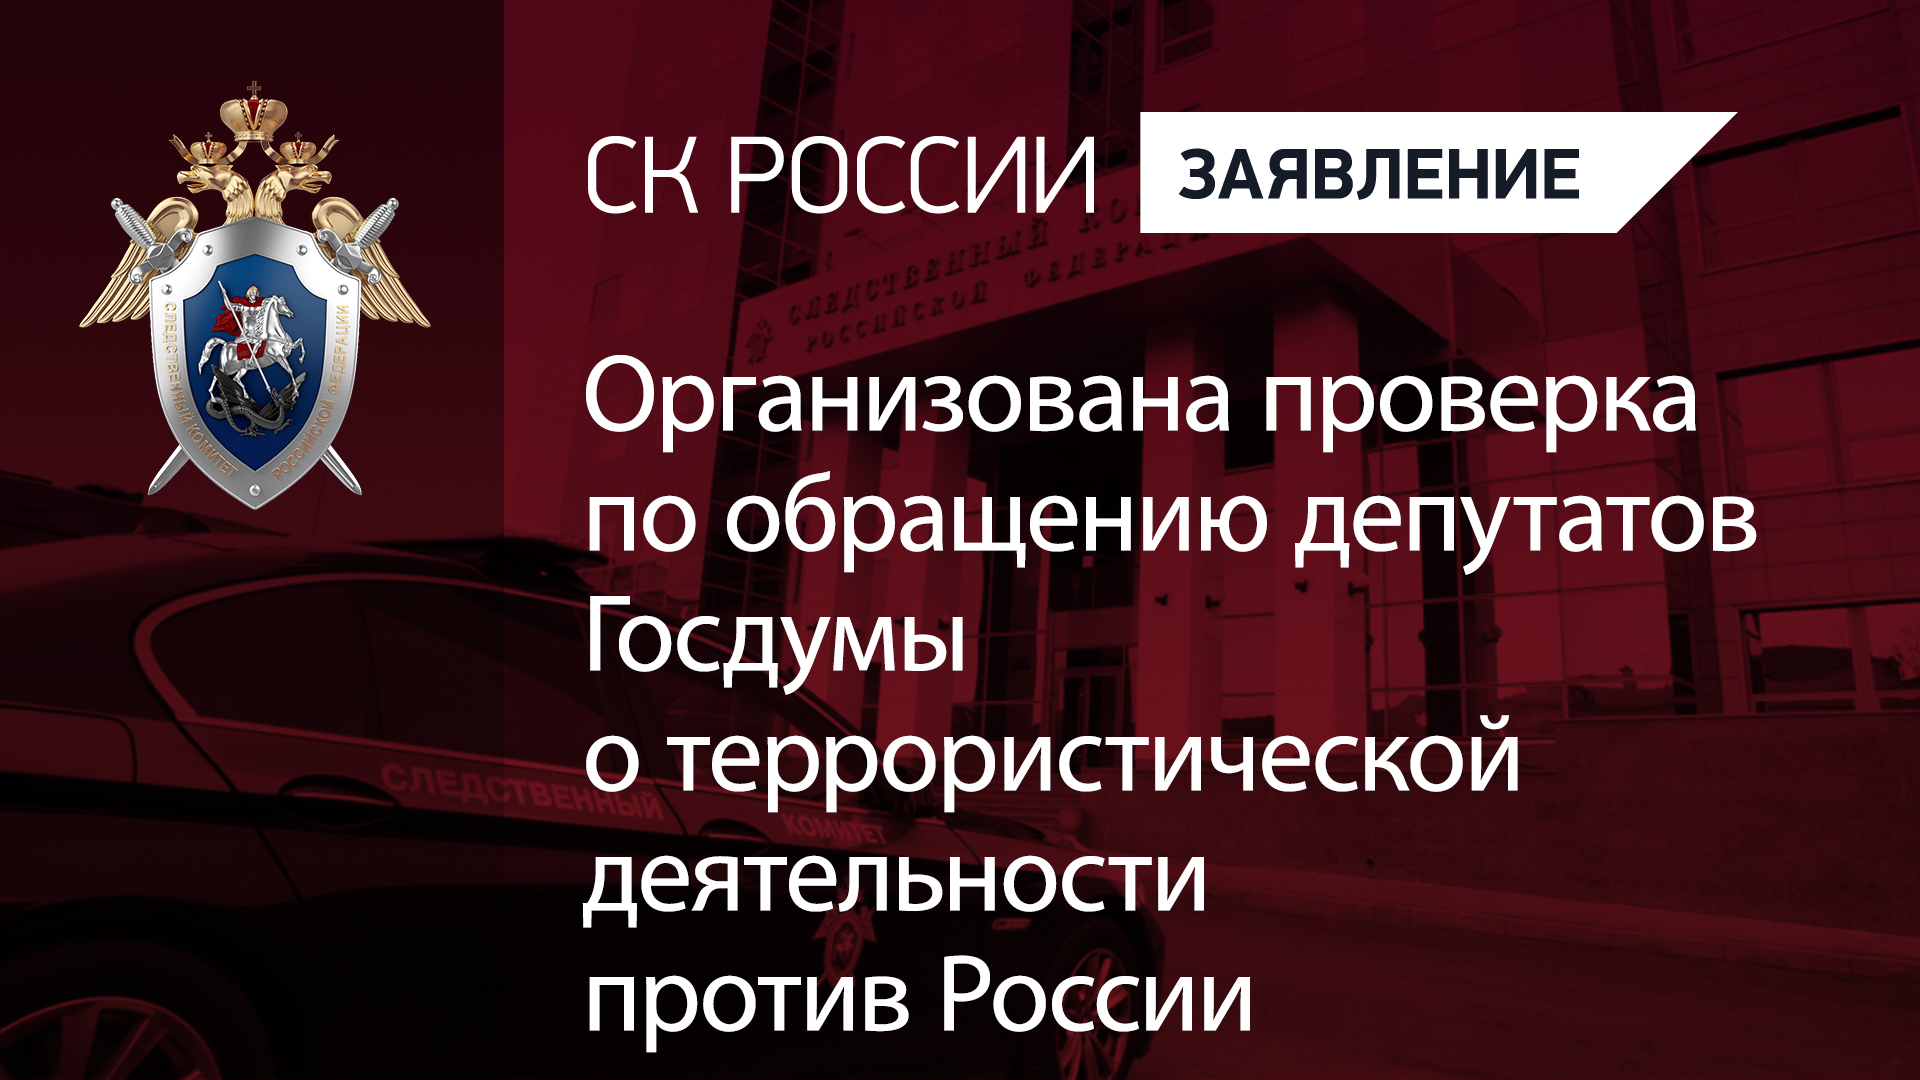 Организована проверка по обращению депутатов Госдумы о террористической деятельности против России